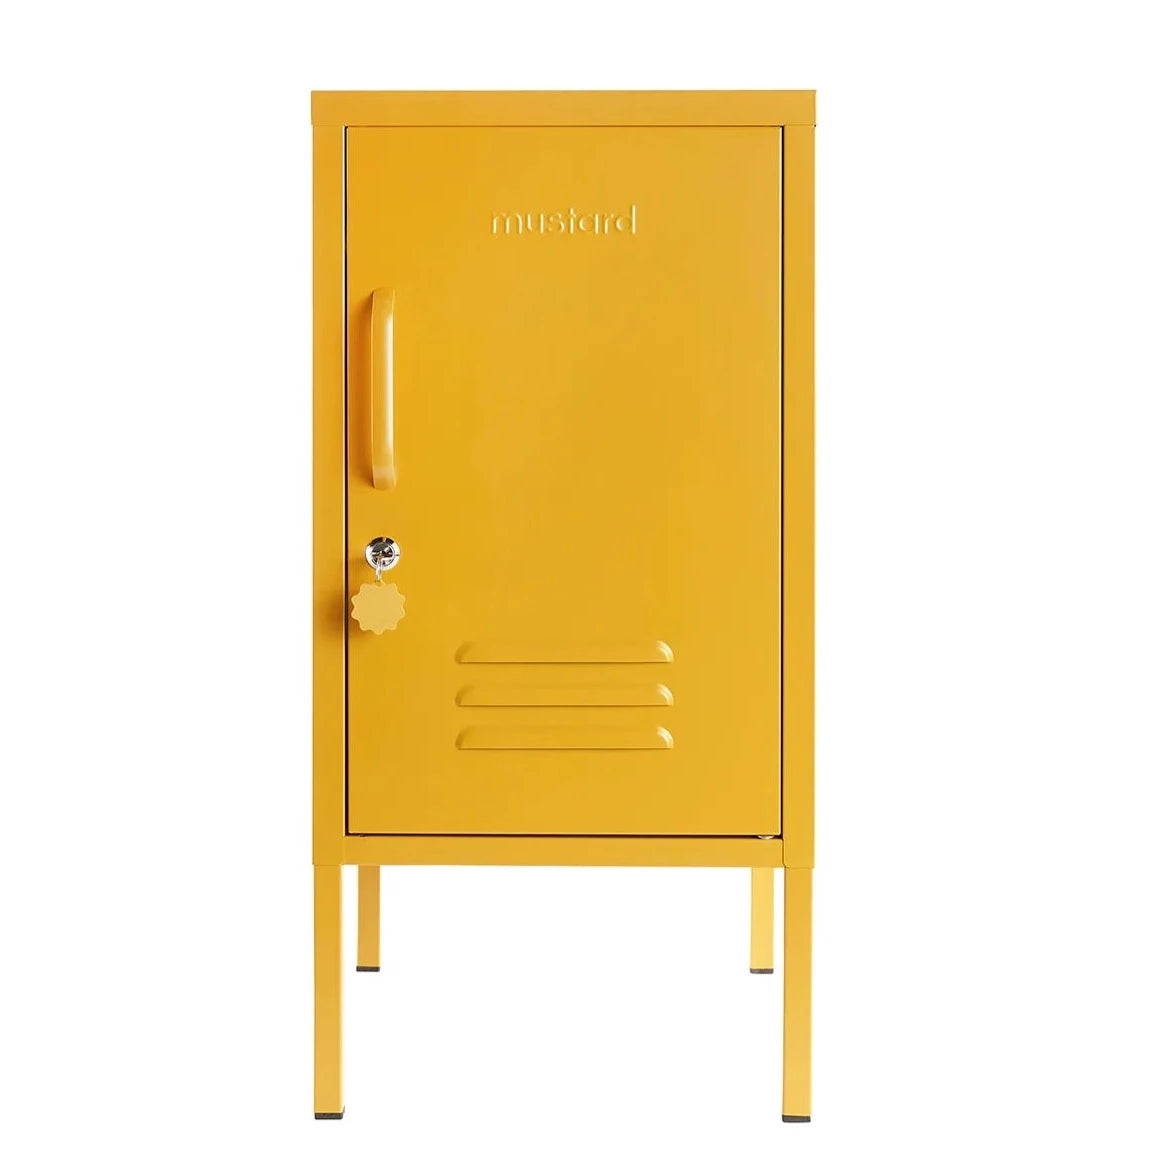 The Shorty Locker in Mustard By Mustard Made